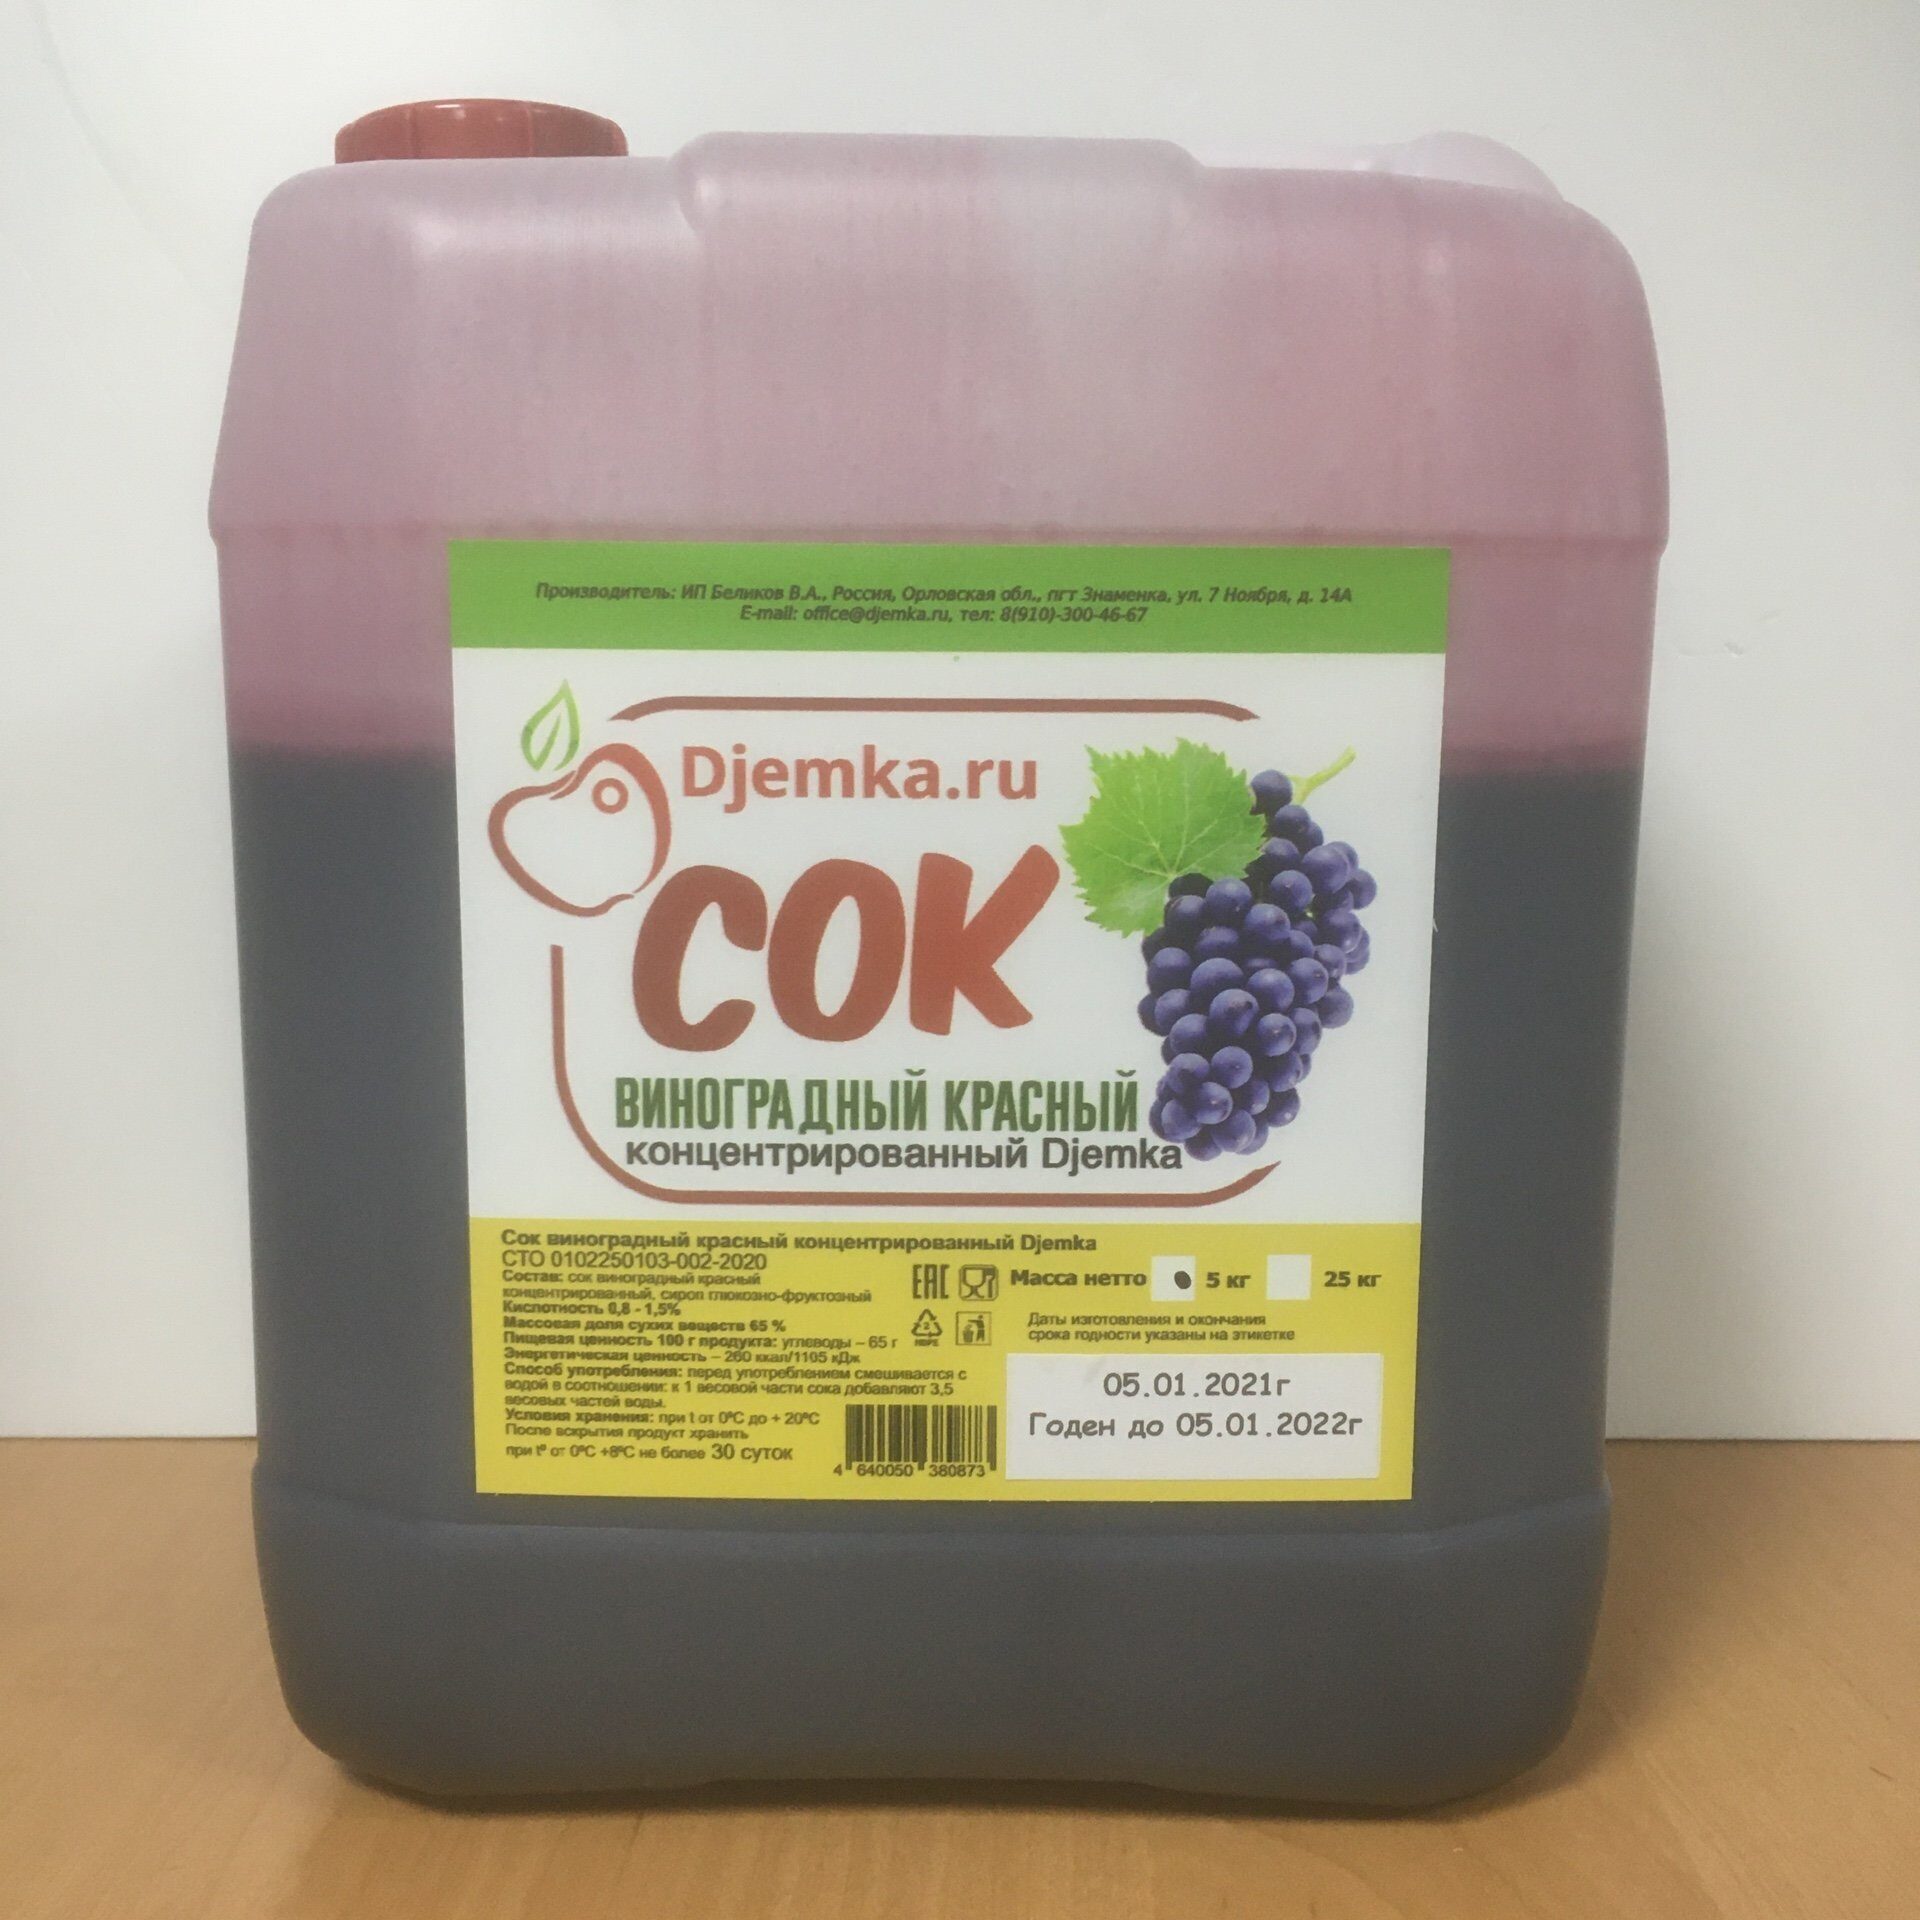 Красный виноградный сок. Концентрат djemka виноградный красный. Концентрированный виноградный сок. Концентрат сока. Концентрат сока винограда.